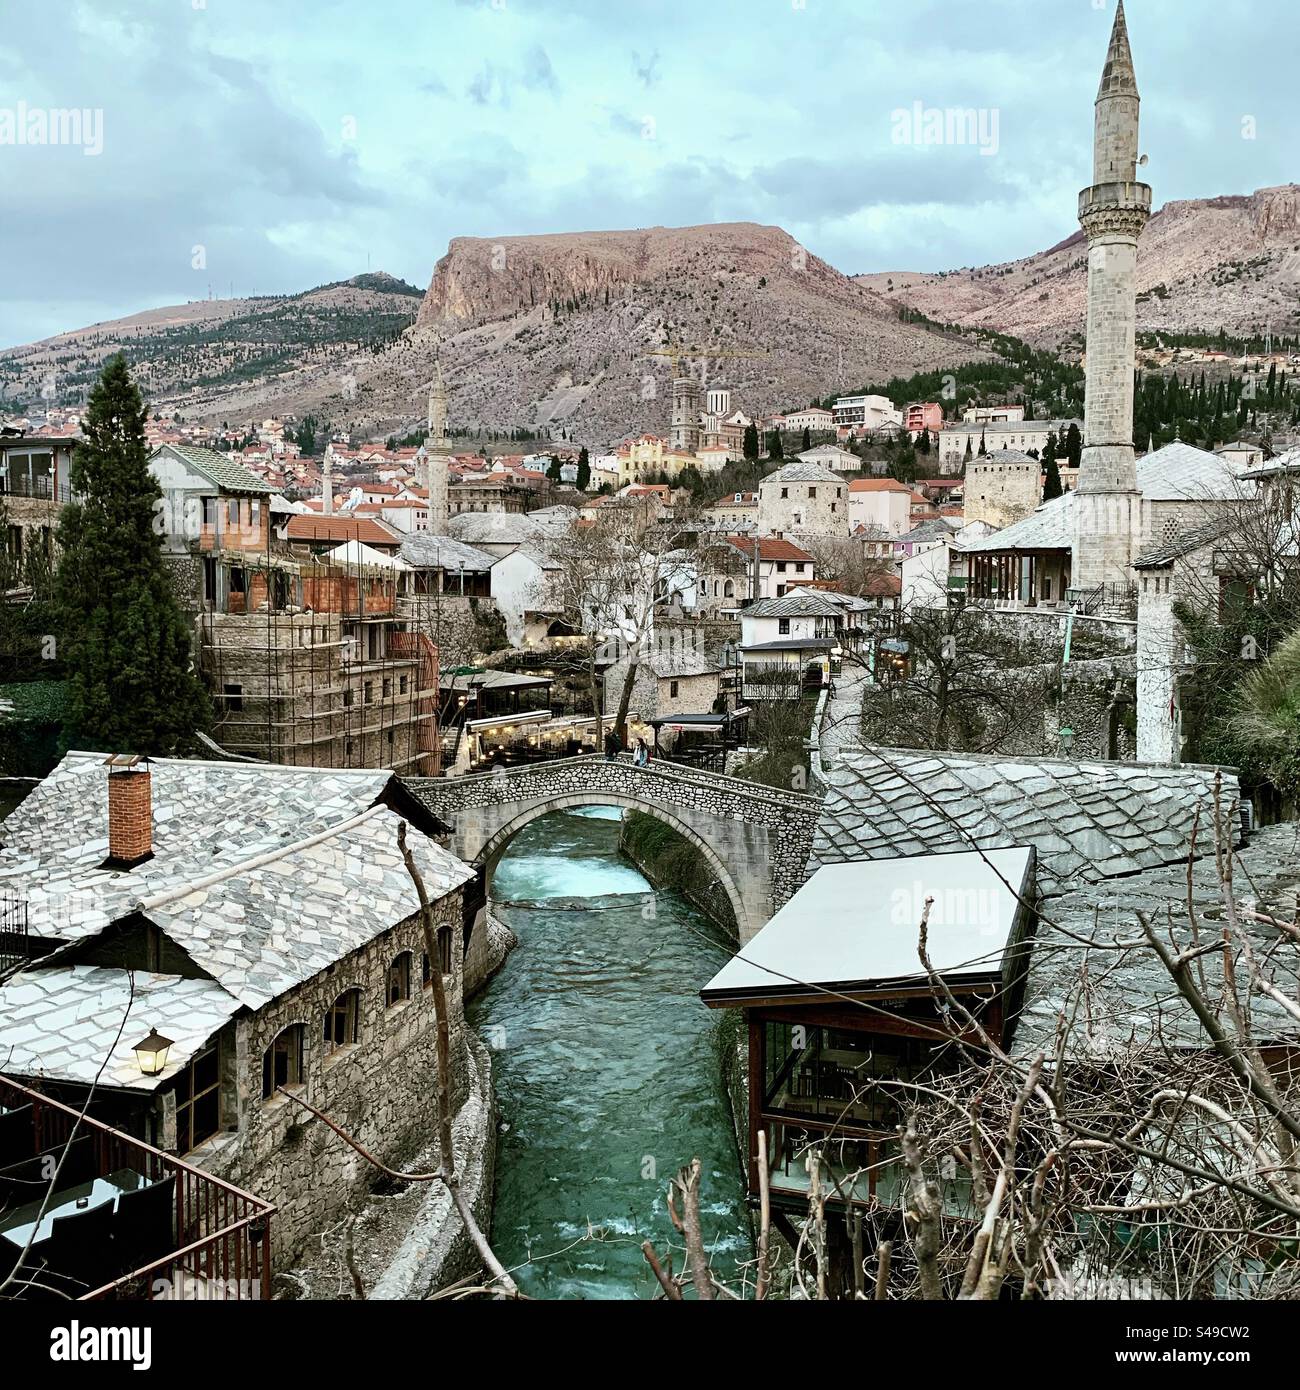 Fesselnder Blick auf die Stadt Mostar: Die Mischung aus historischer osmanischer Architektur und pulsierendem Stadtleben entlang des Flusses Neretva schafft eine unvergessliche Szene im Herzen von Bosnien. Stockfoto